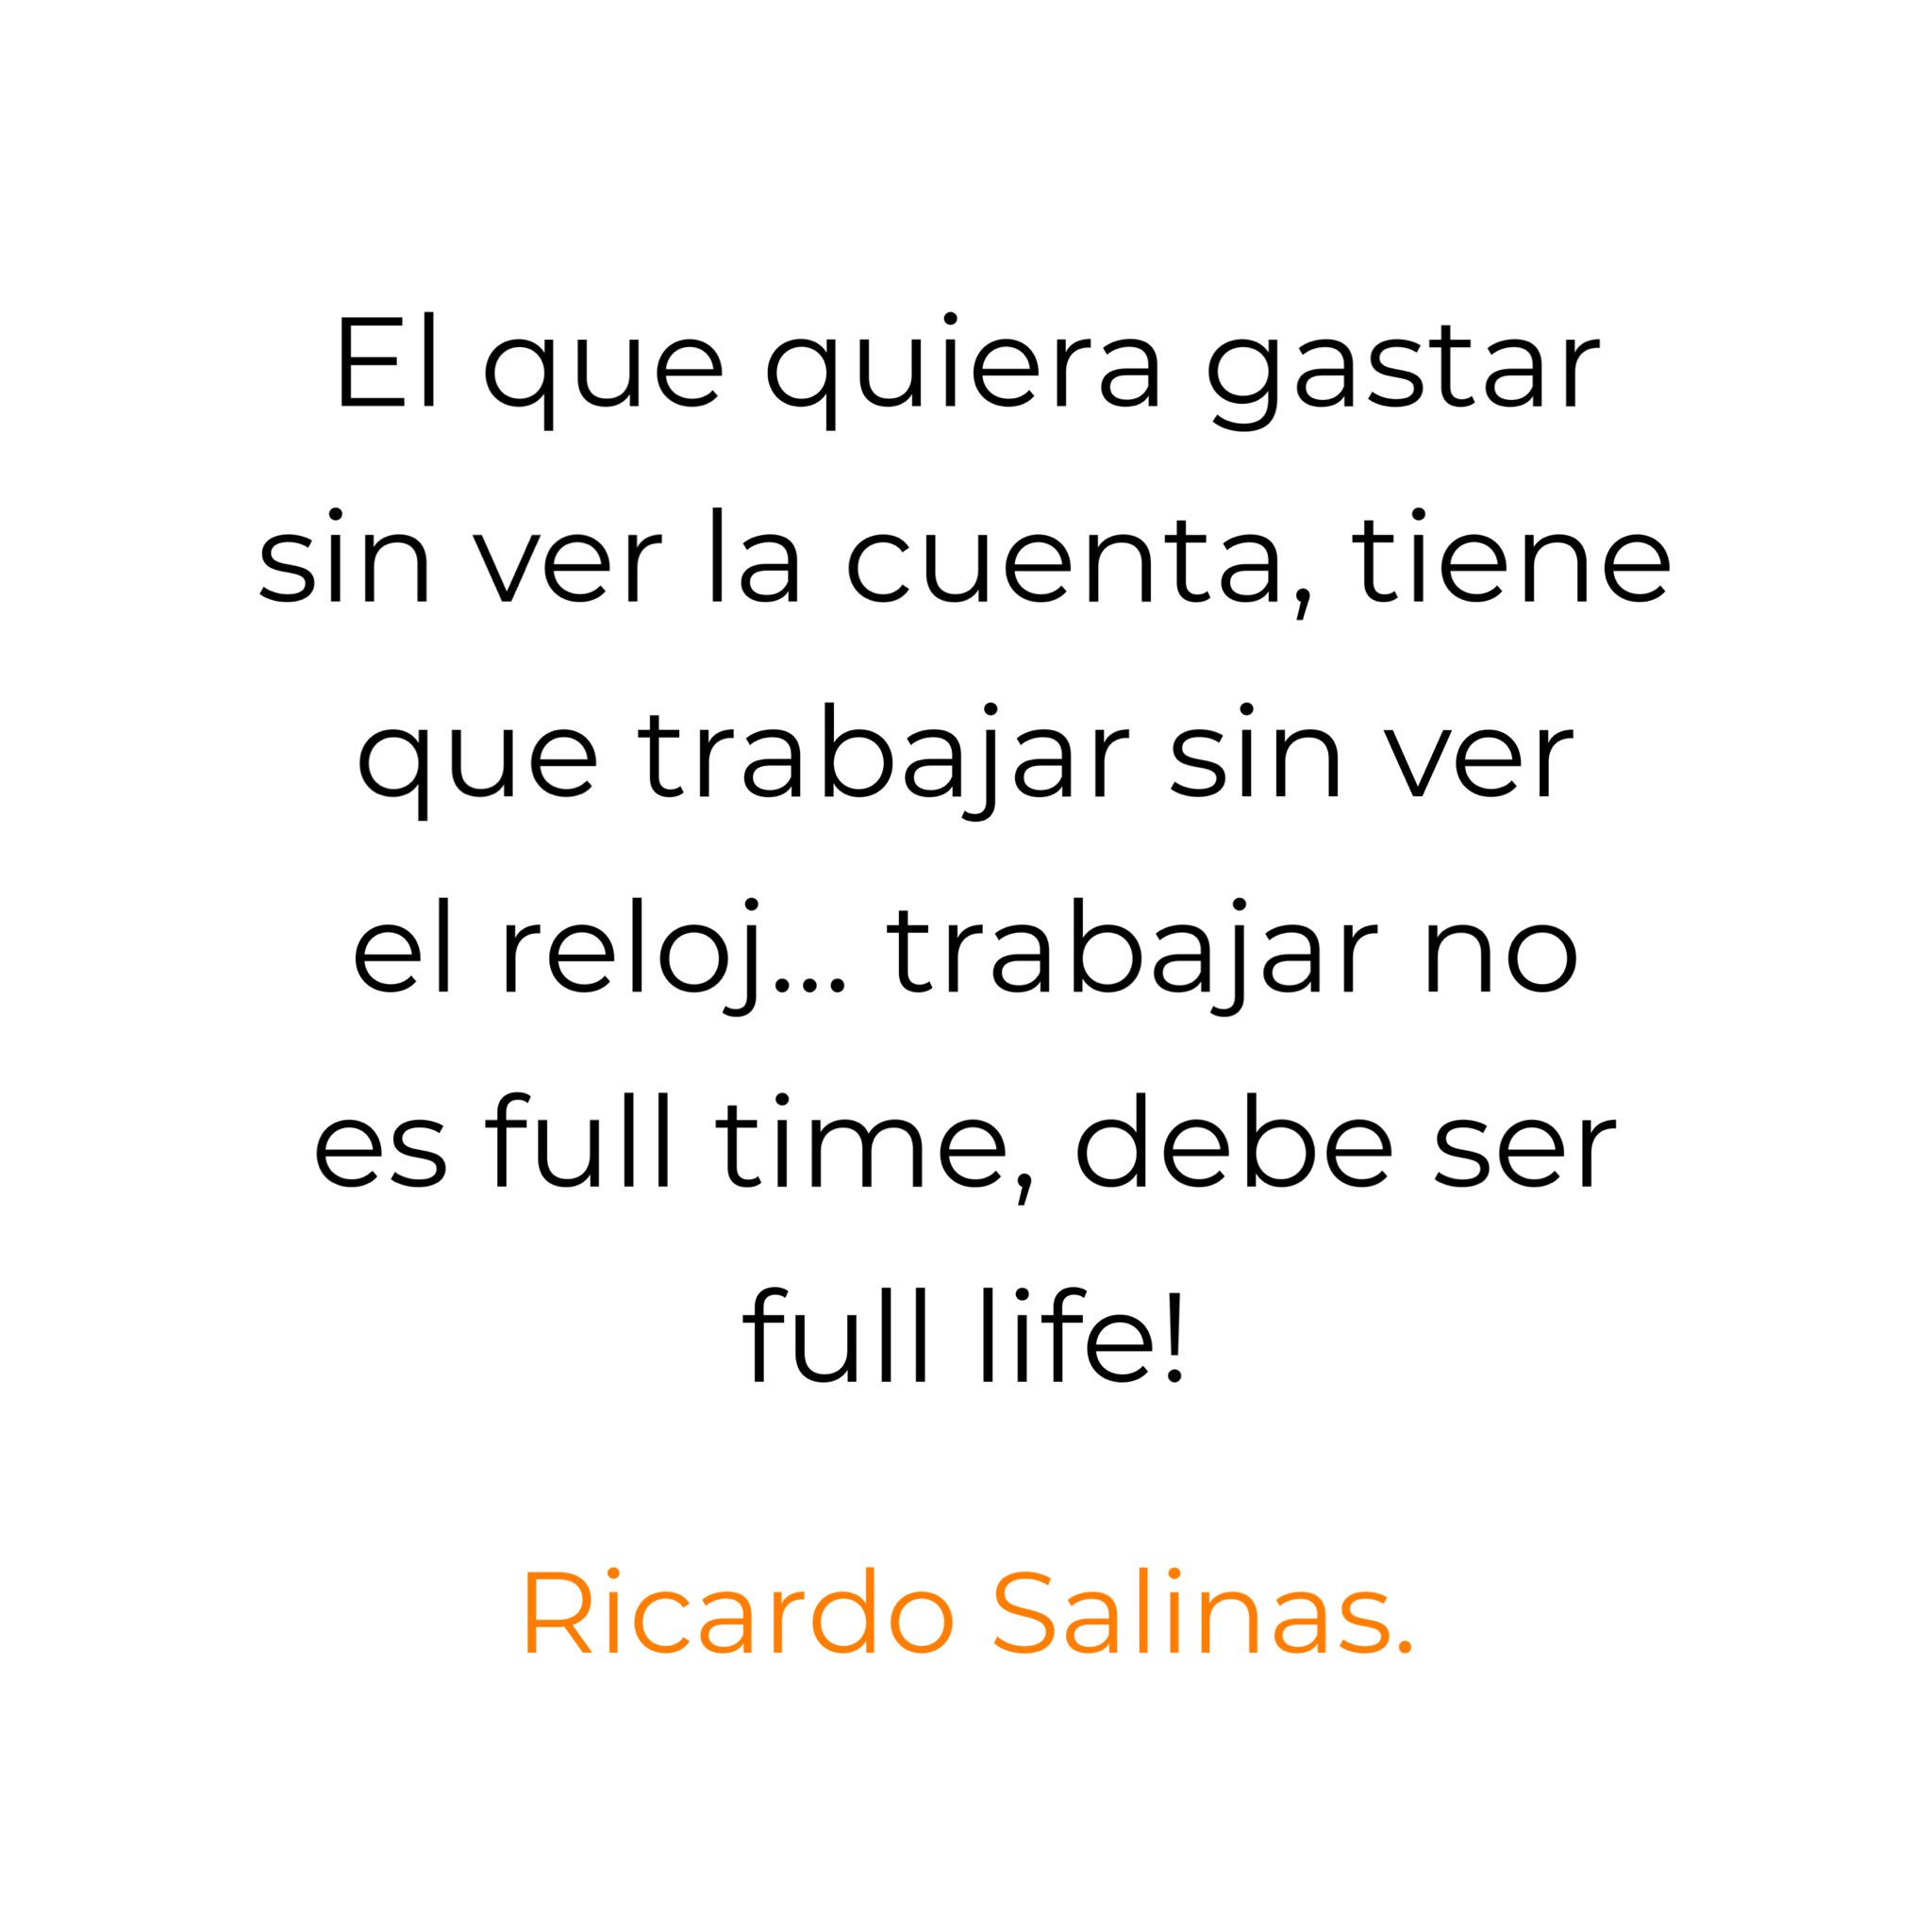 Don Ricardo Salinas Pliego on X: #BuenosDias